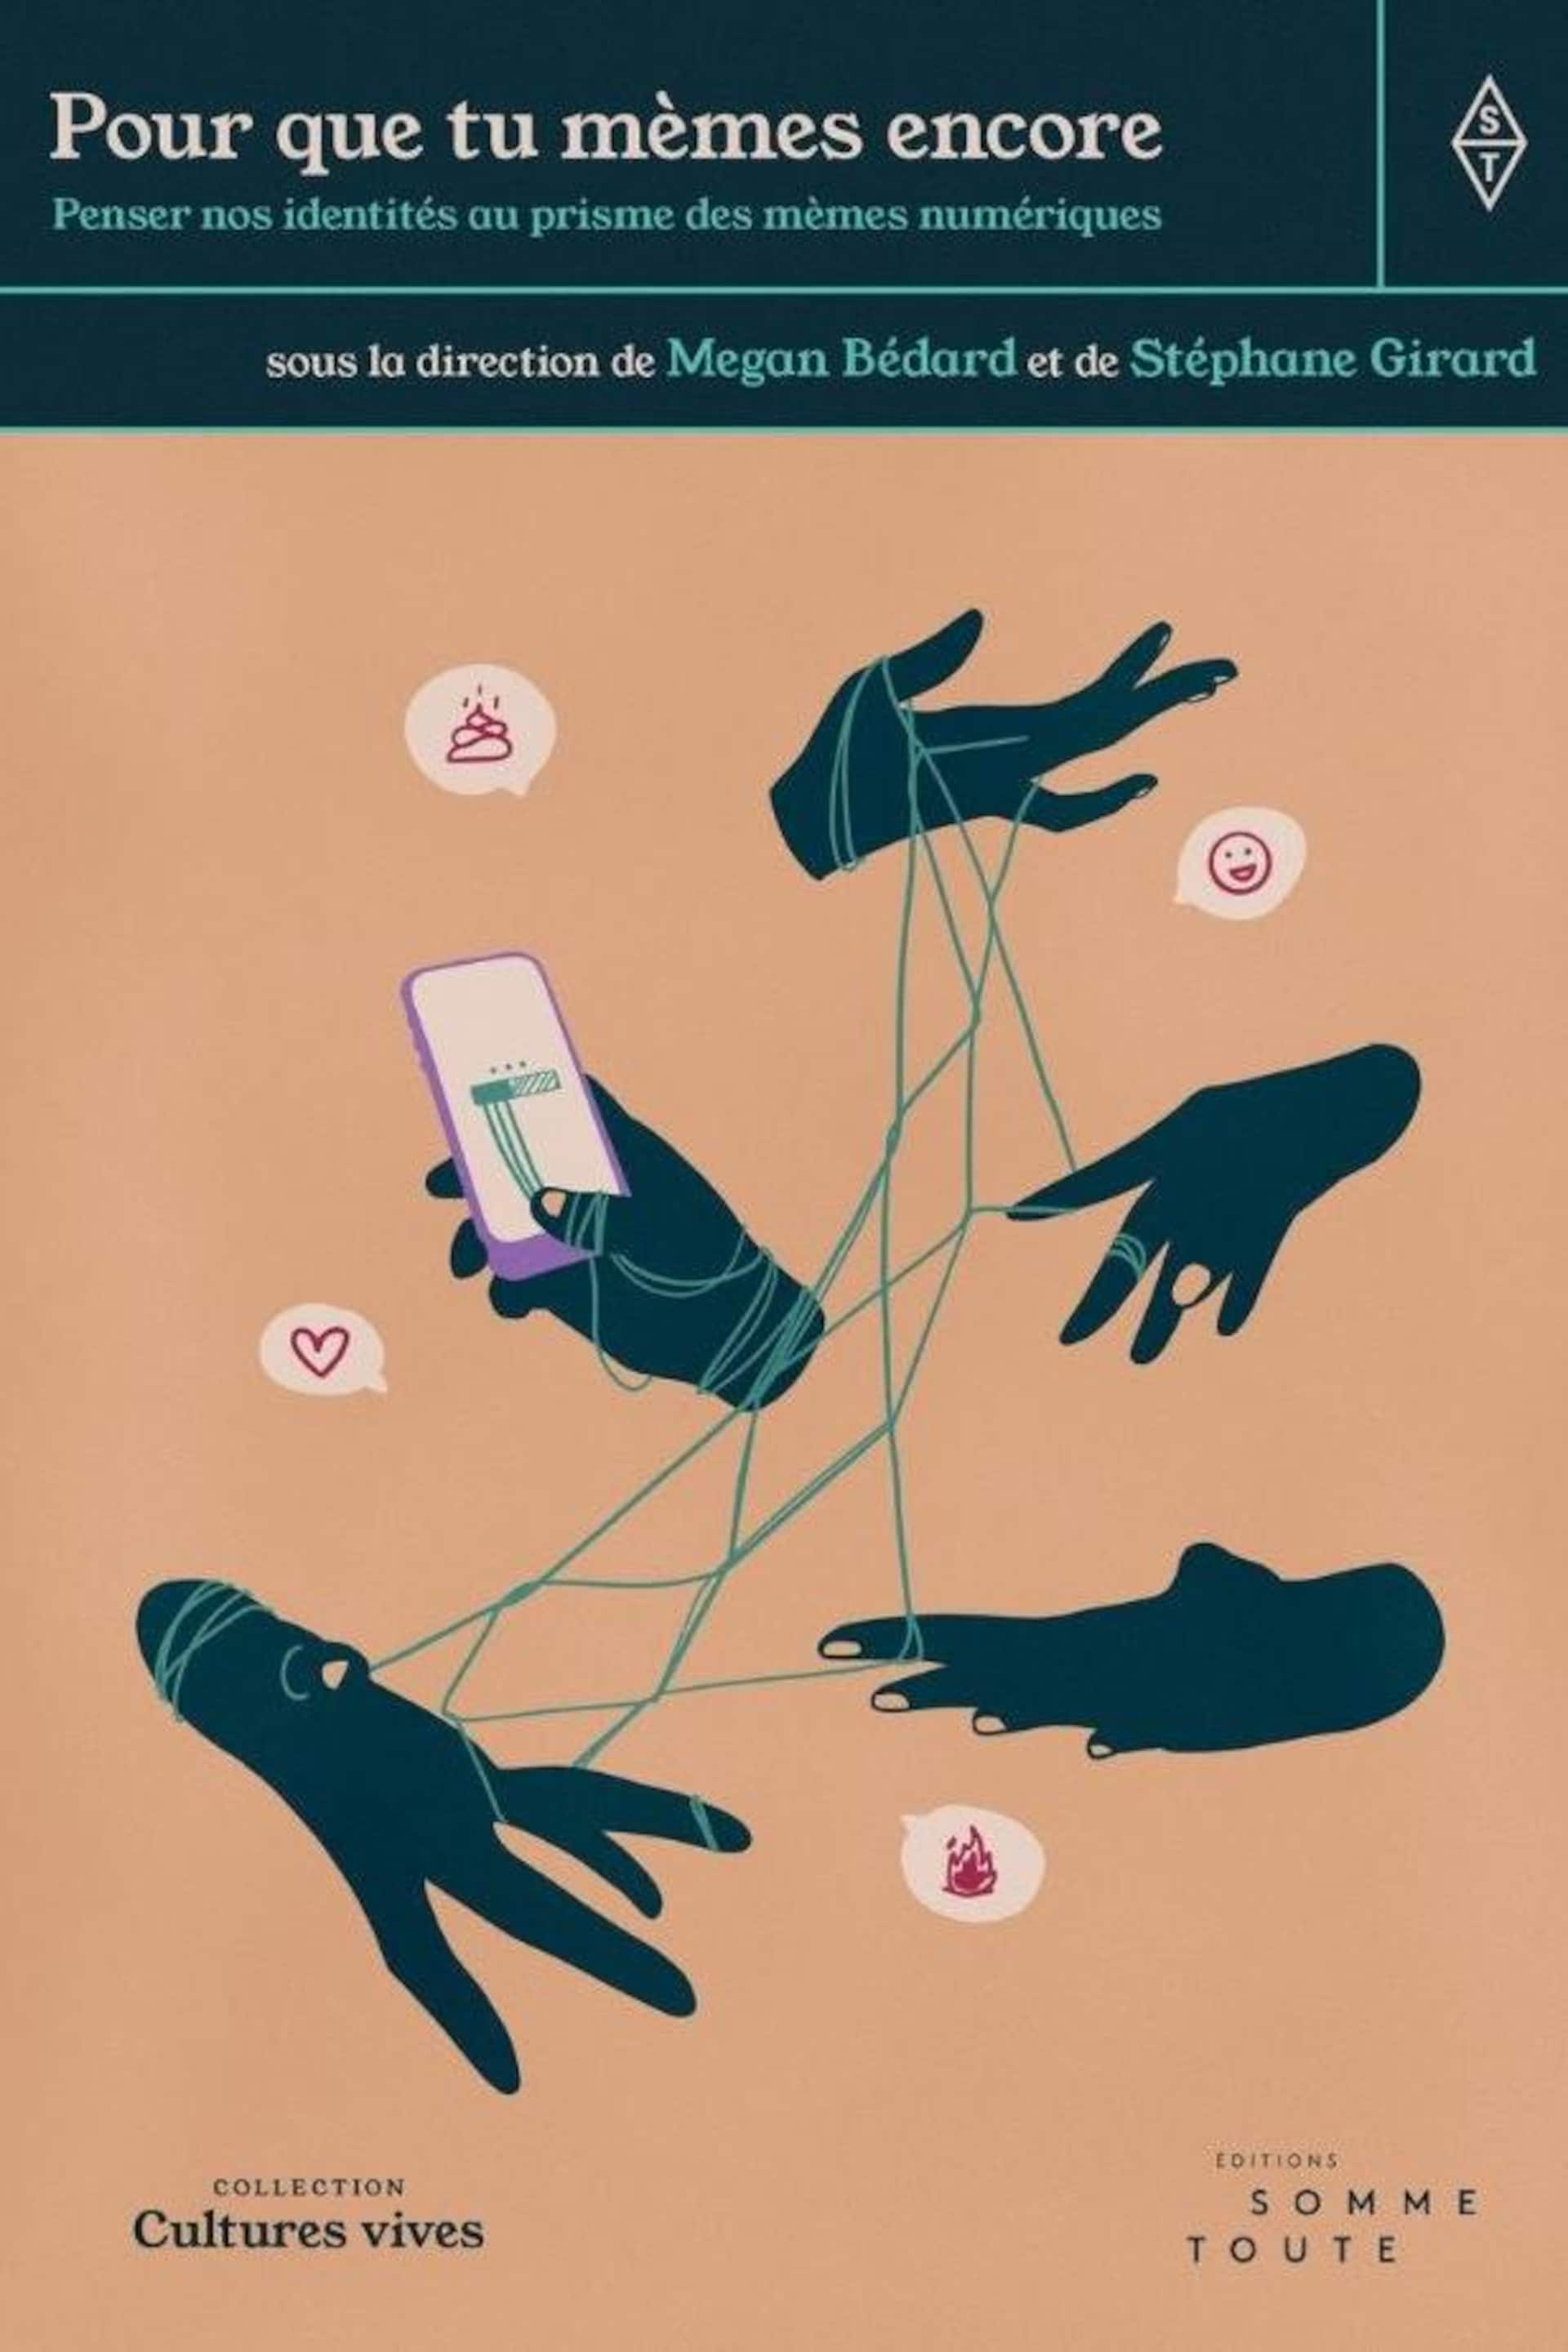 Couverture d'un livre qui montre une illustration de mains, de ficelles et d'un téléphone intelligent. 